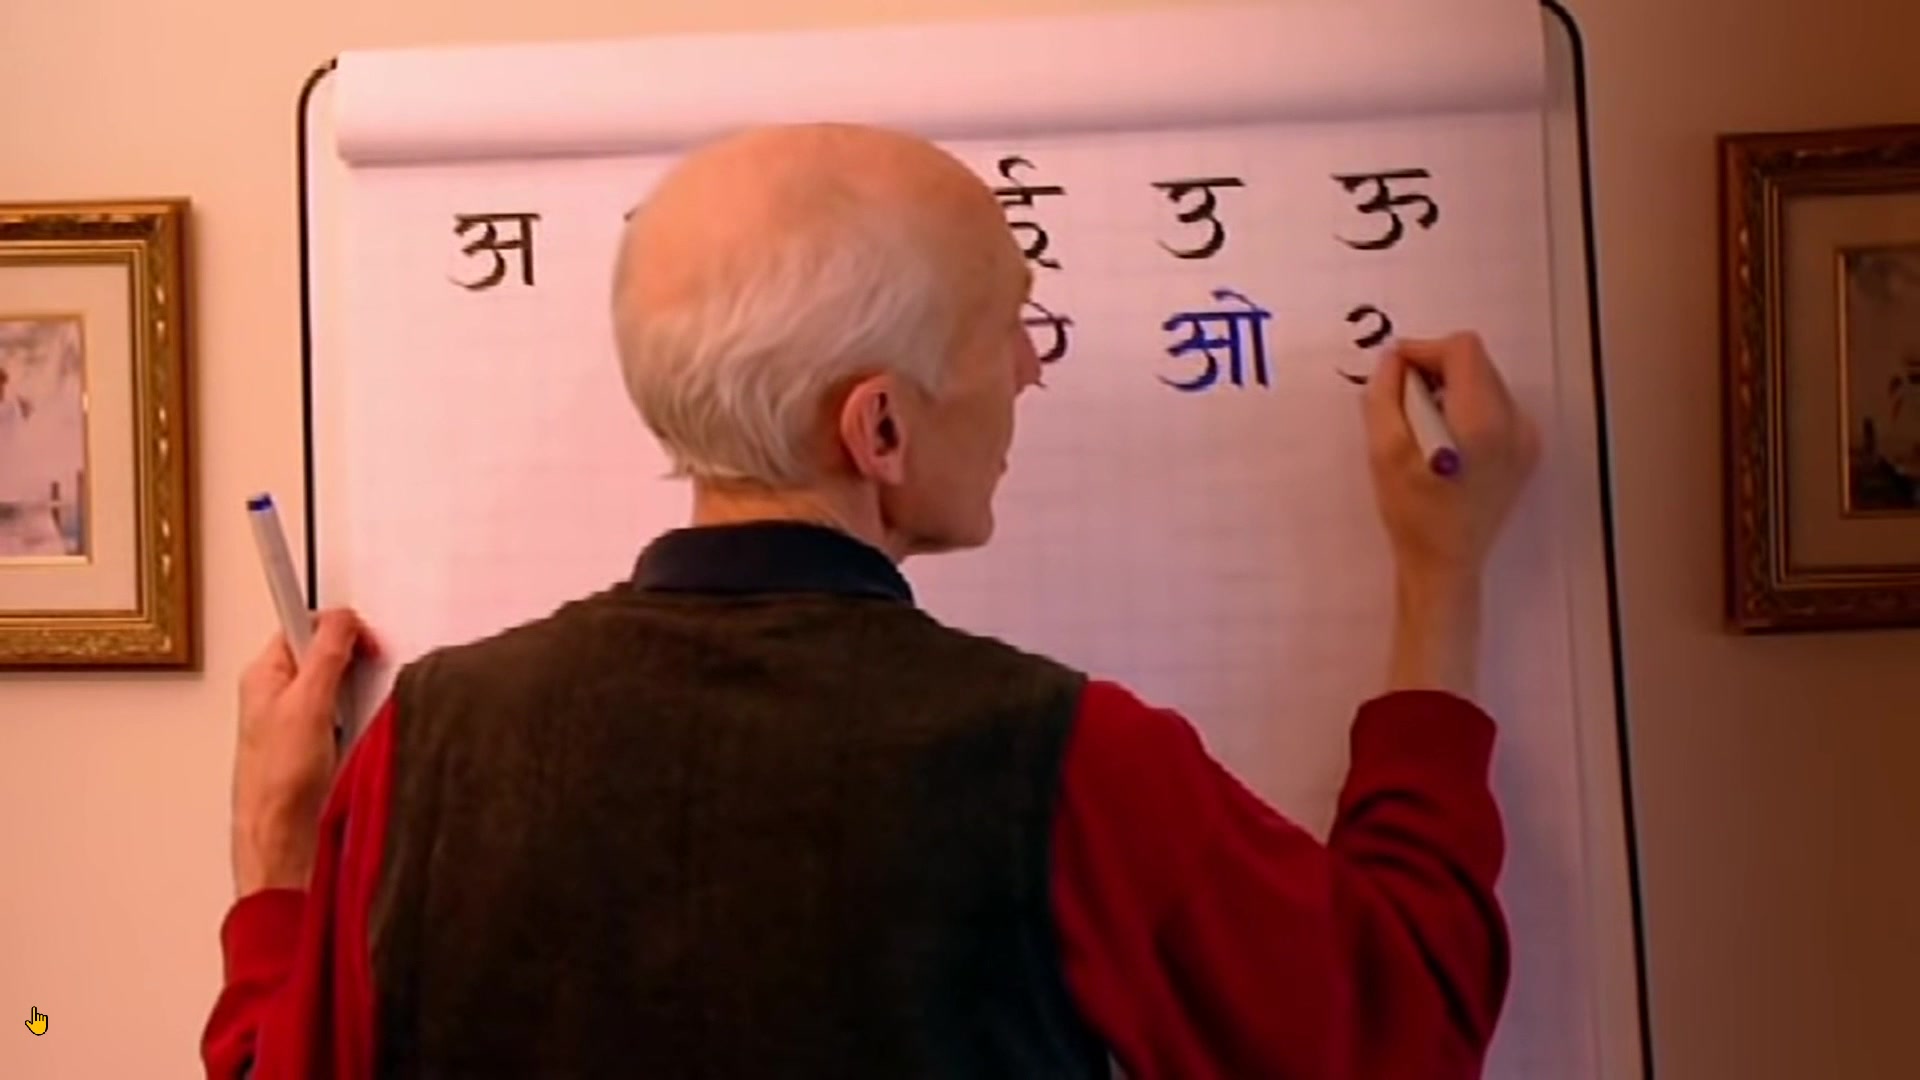 梵语字母书写